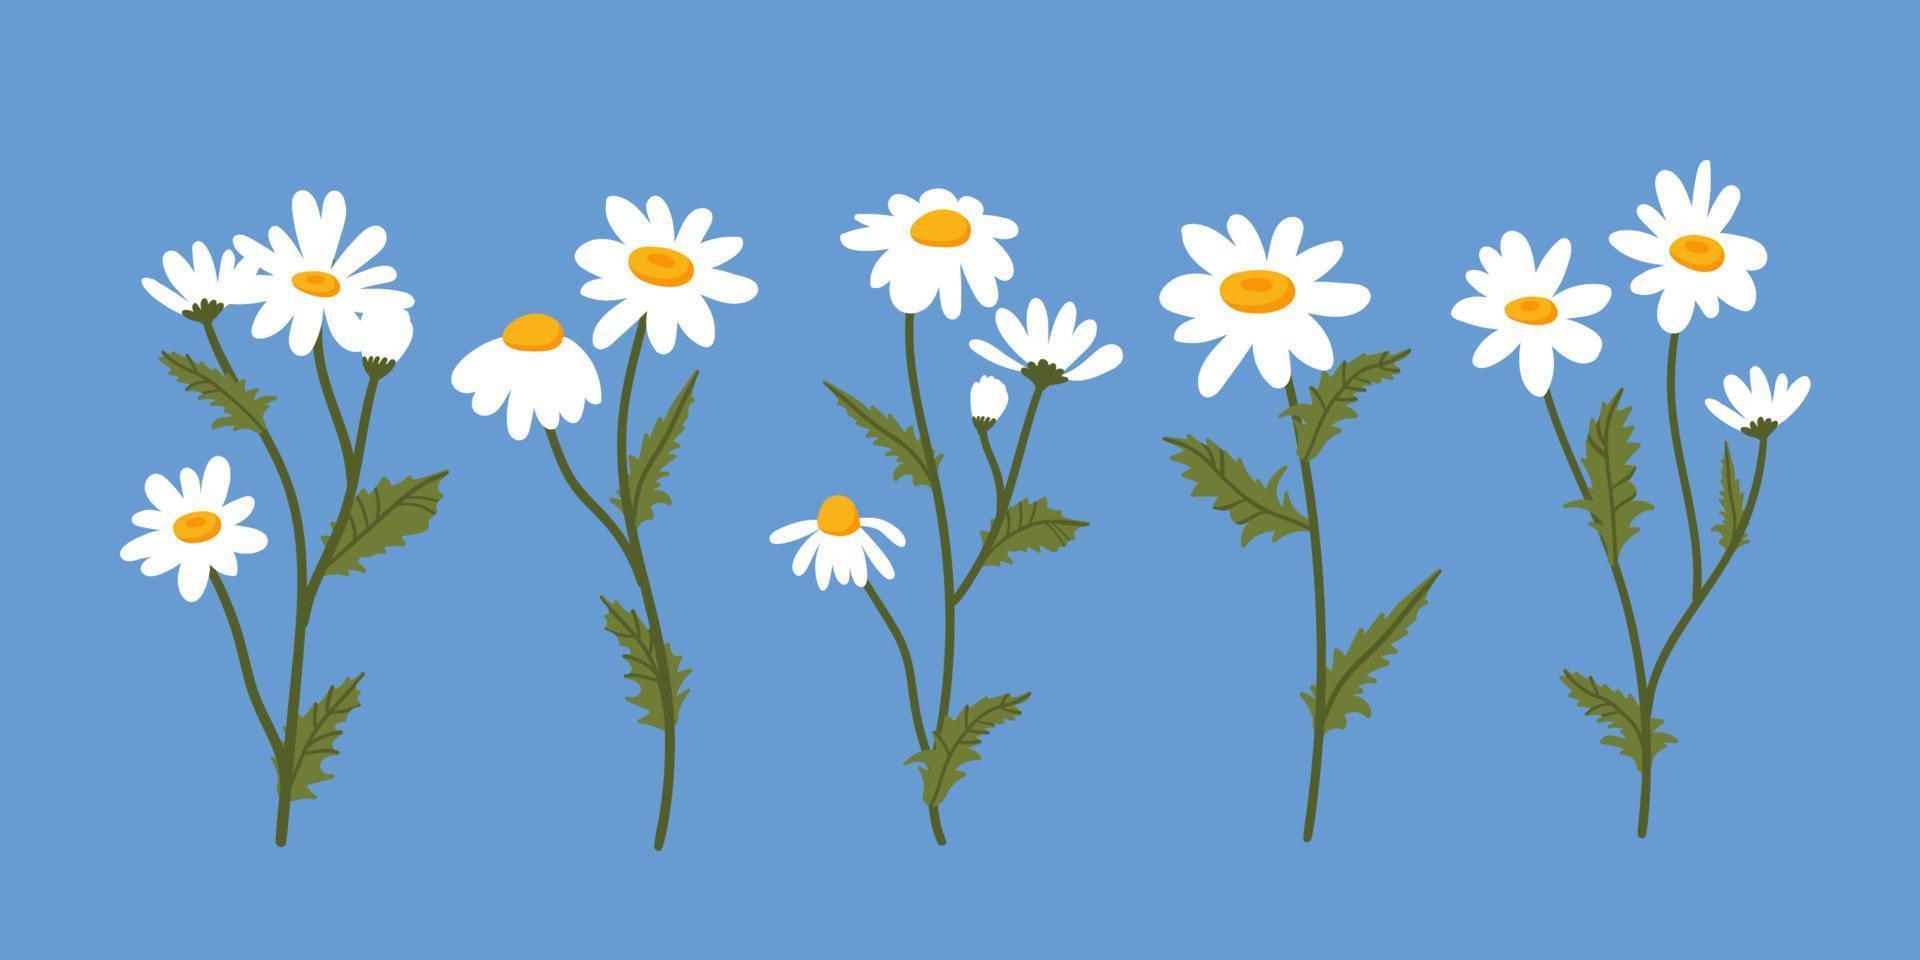 kamomill set vektorillustration. samling av vita sommarprästkrageblommor, blomställningar, knoppar och löv isolerade. vektor